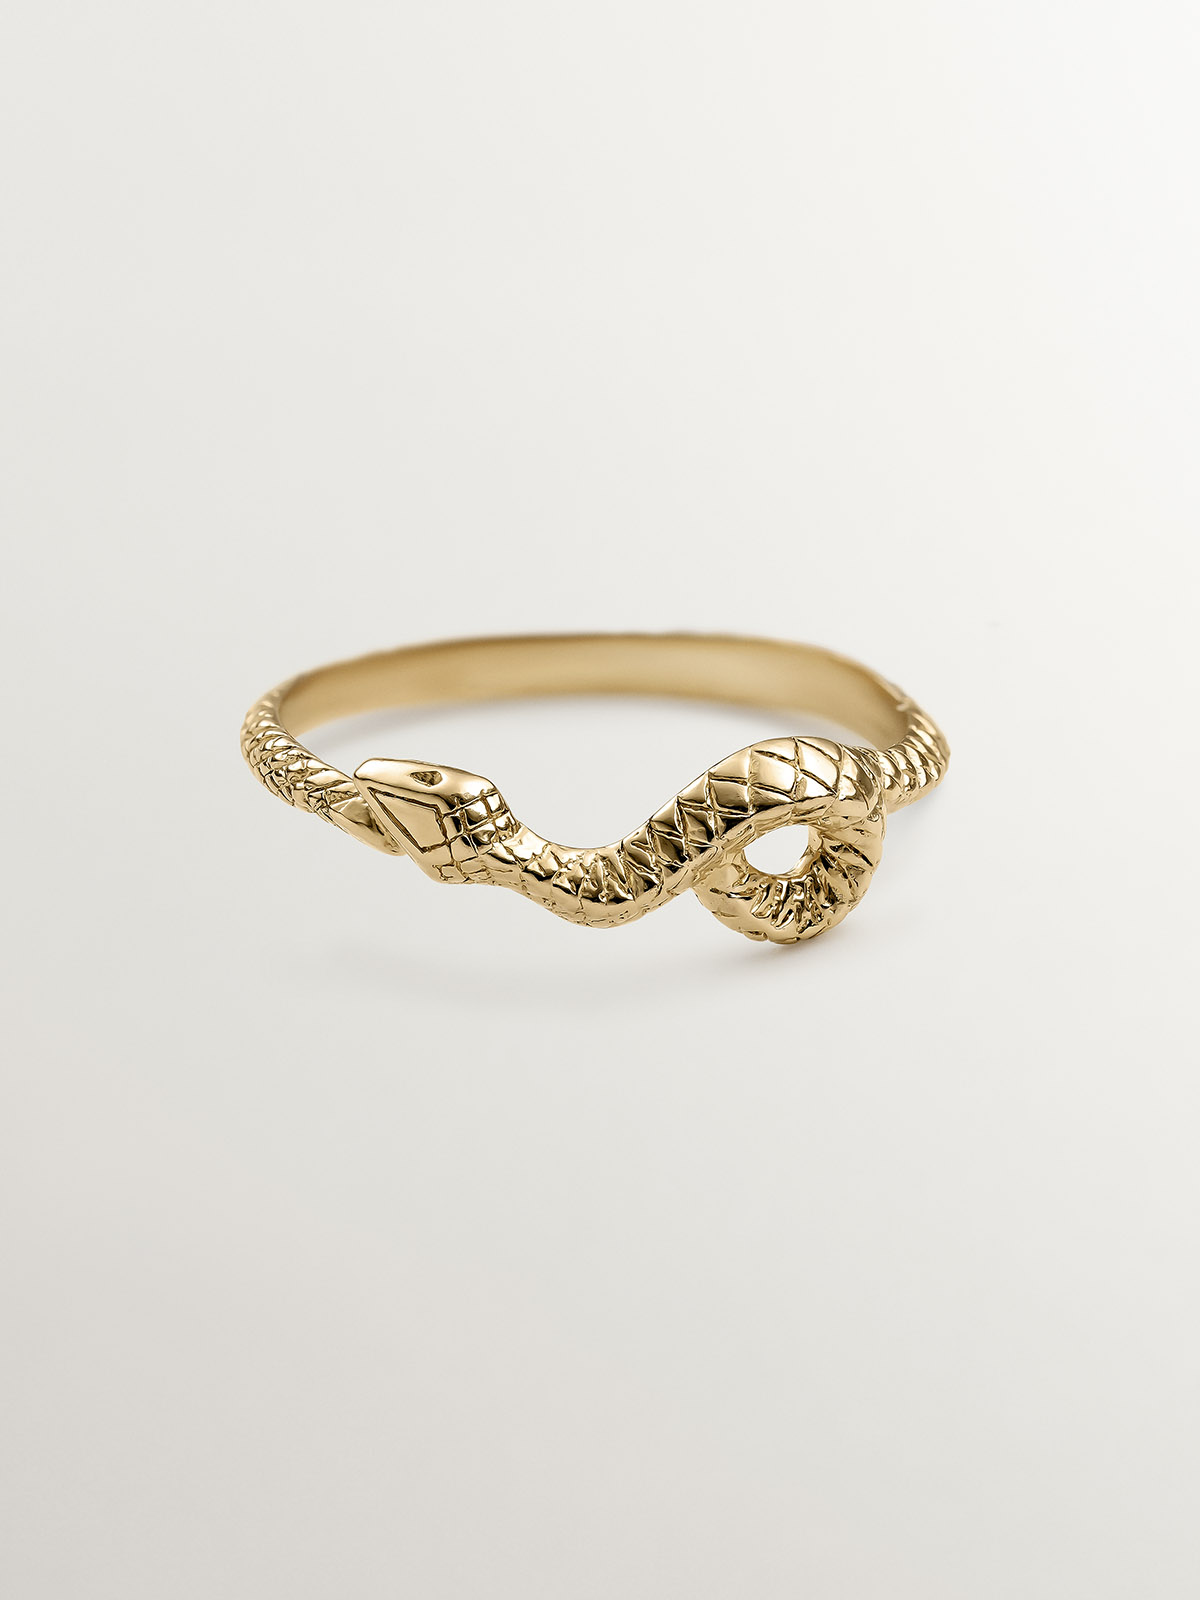 Anillo motivo serpiente de plata recubierta de oro, J04853-02, hi-res